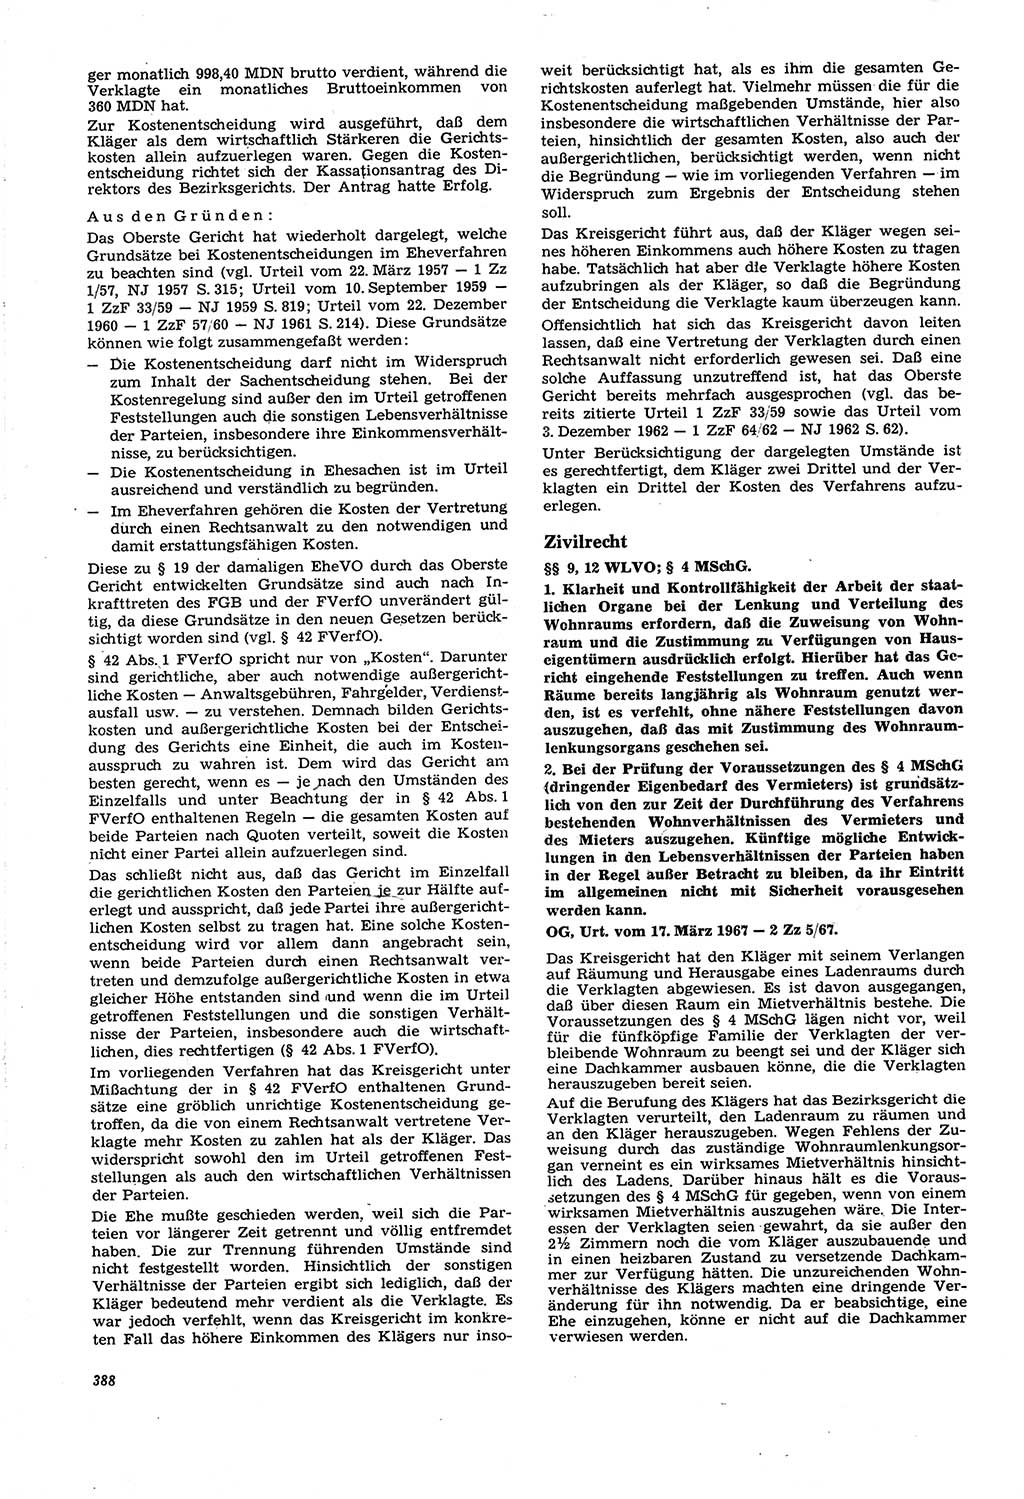 Neue Justiz (NJ), Zeitschrift für Recht und Rechtswissenschaft [Deutsche Demokratische Republik (DDR)], 21. Jahrgang 1967, Seite 388 (NJ DDR 1967, S. 388)